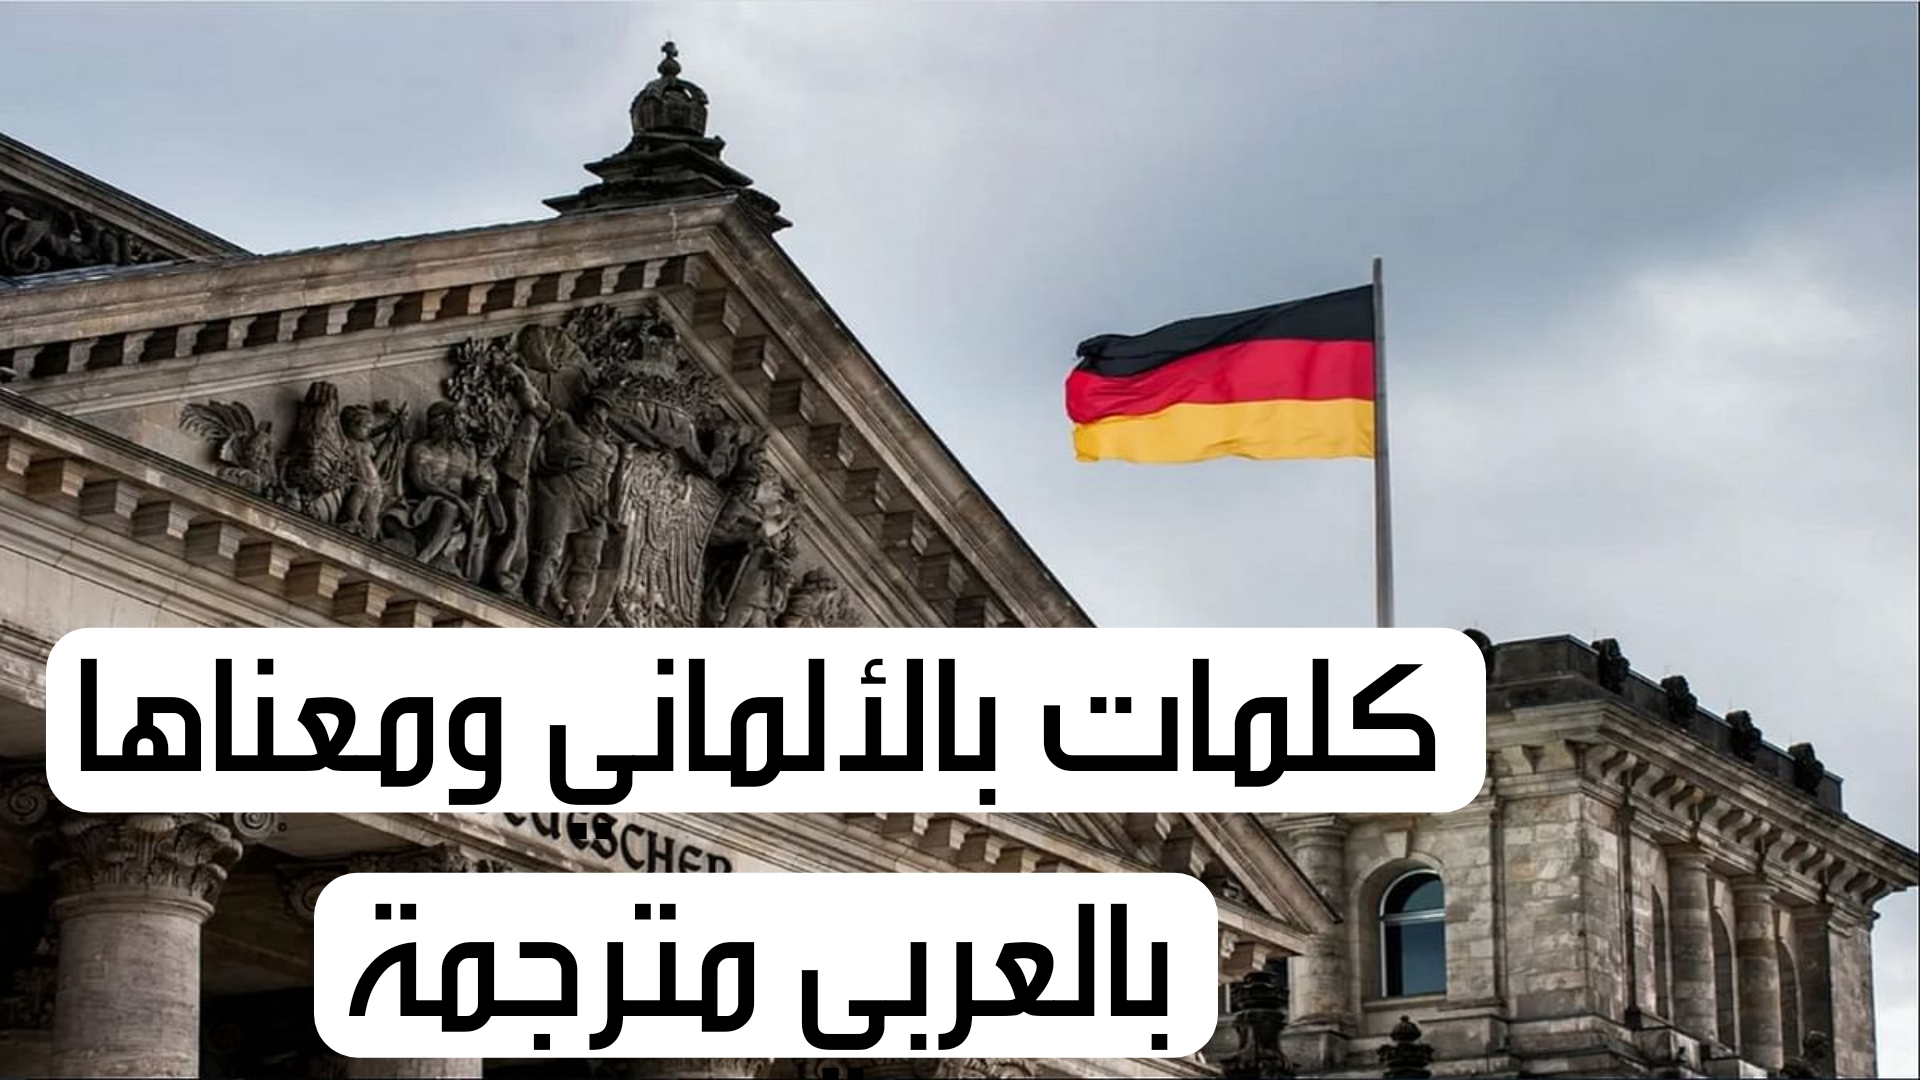 كلمات بالألماني ومعناها بالعربي مترجمة